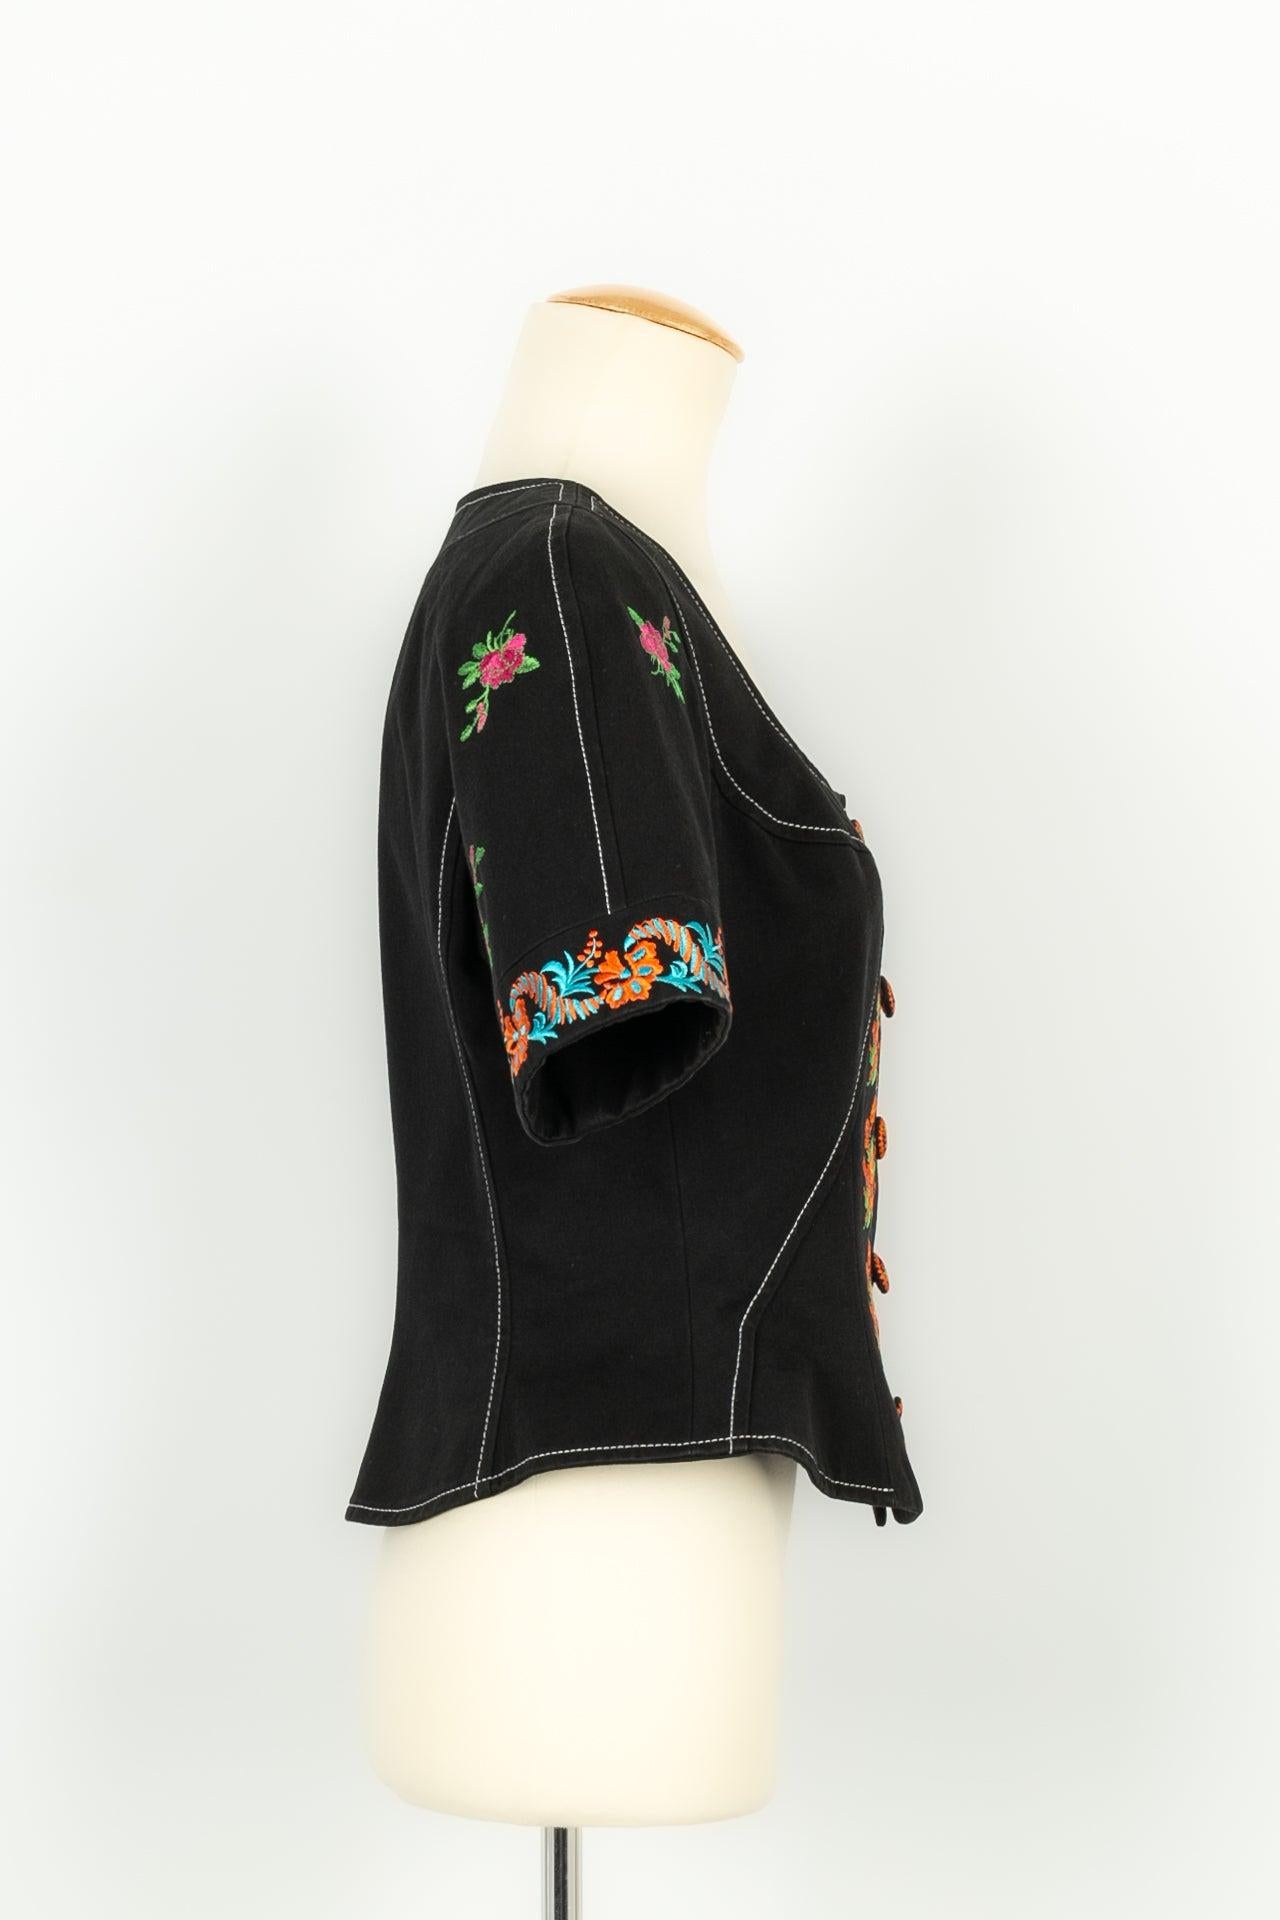 Christian Lacroix - (Made in France) Top aus schwarzer Baumwolle, bestickt mit mehrfarbigen Blumenmustern. Größe 40FR. Collection'S Frühjahr-Sommer 1993. Zu beachten ist, dass die schwarze Baumwolle marmoriert ist, aber nur im Inneren der